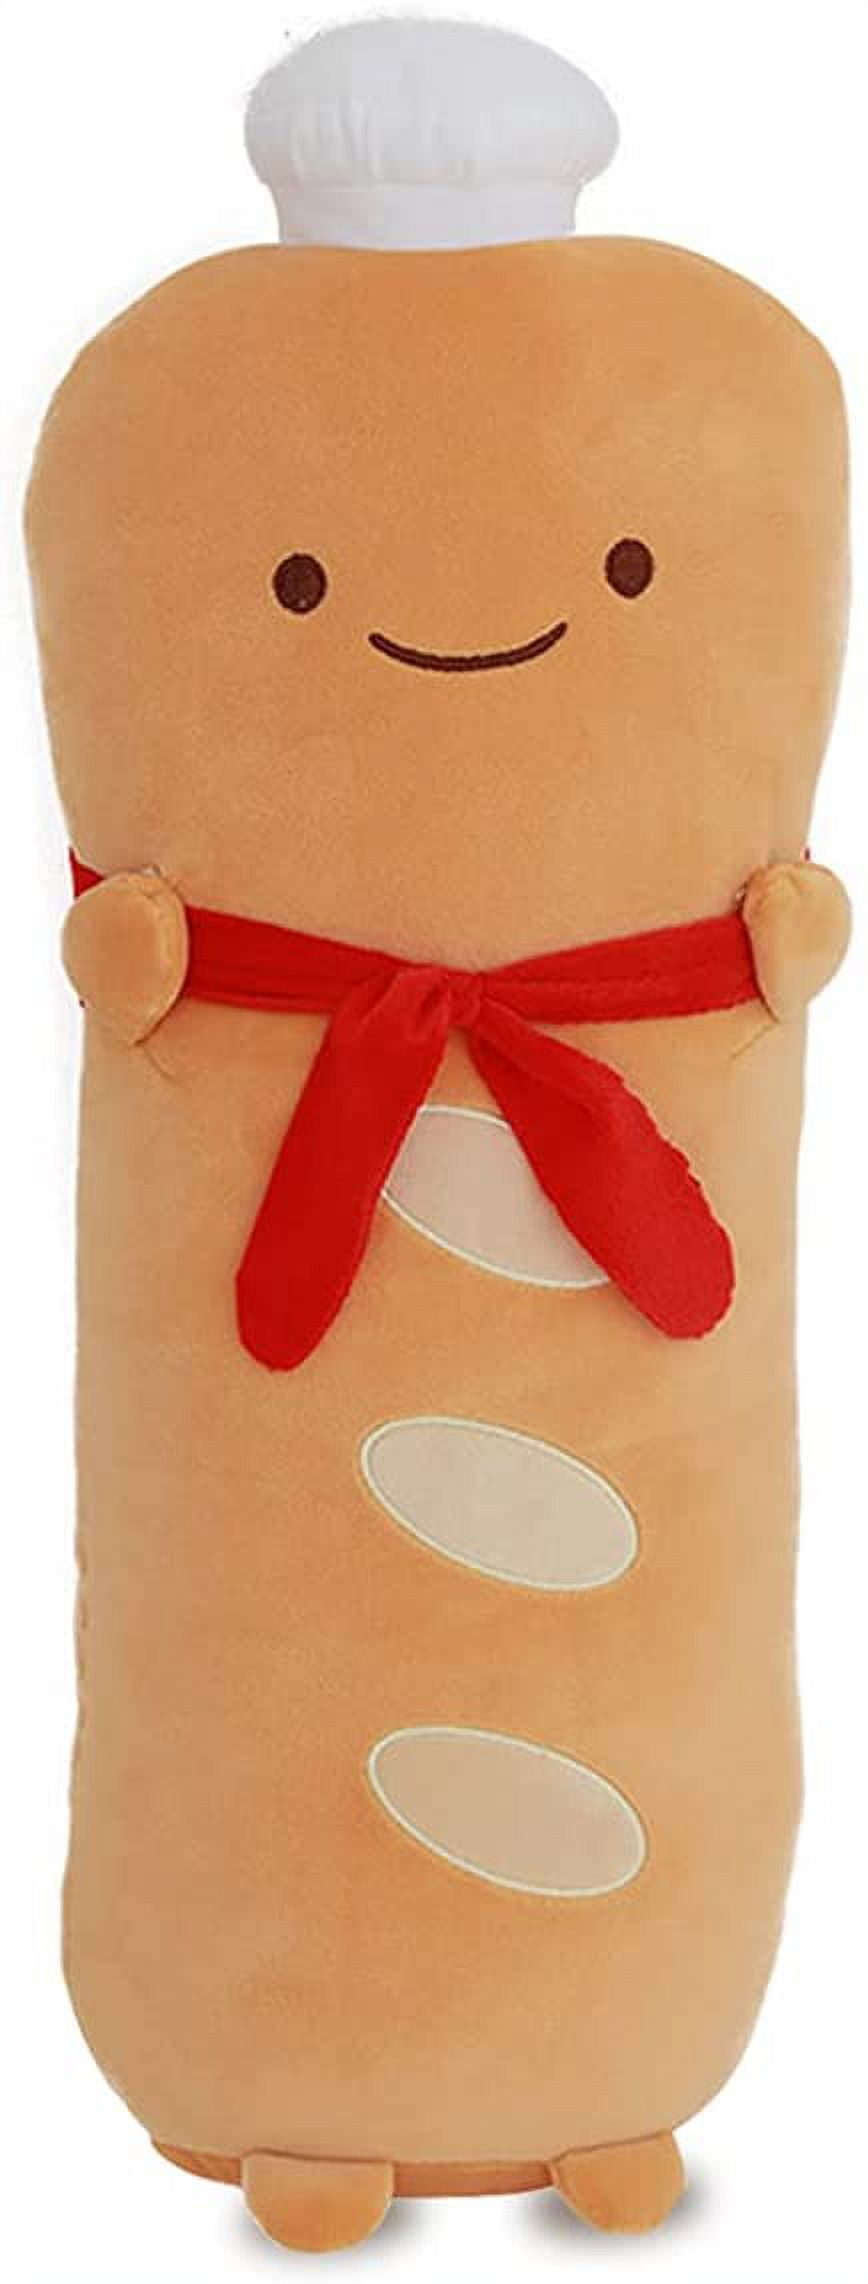 DearDo 31.5-inch Fancy French Bread Plush Cushion Throw Pillow Soft Sofa Car Decoration Stuffed Plush Toy